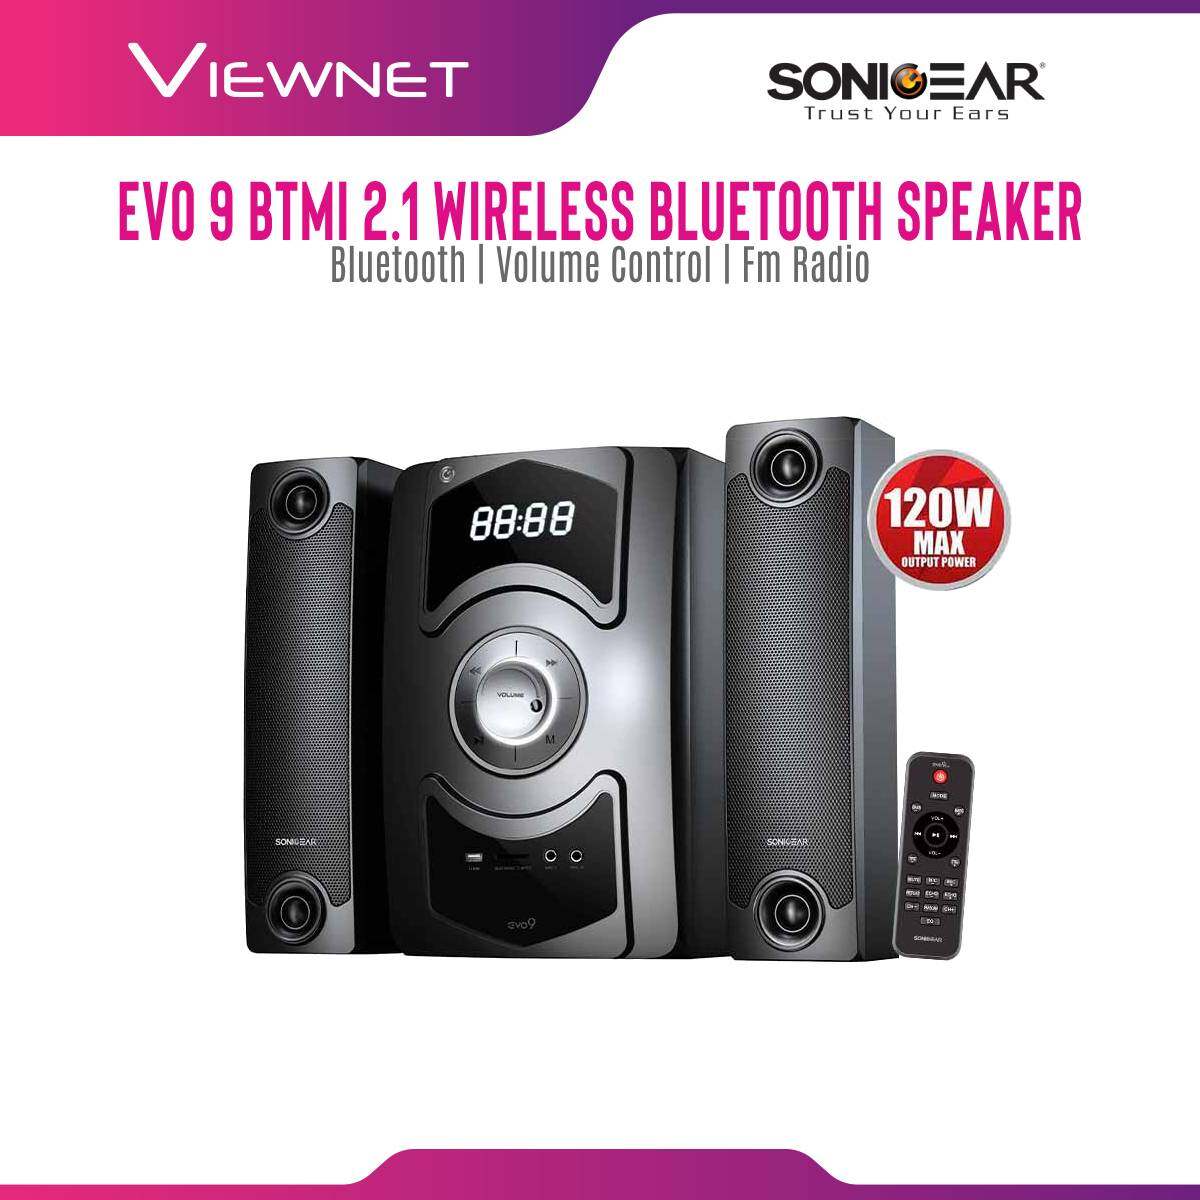 SonicGear Evo 9 BTMI 2.1 Wireless Bluetooth Speaker